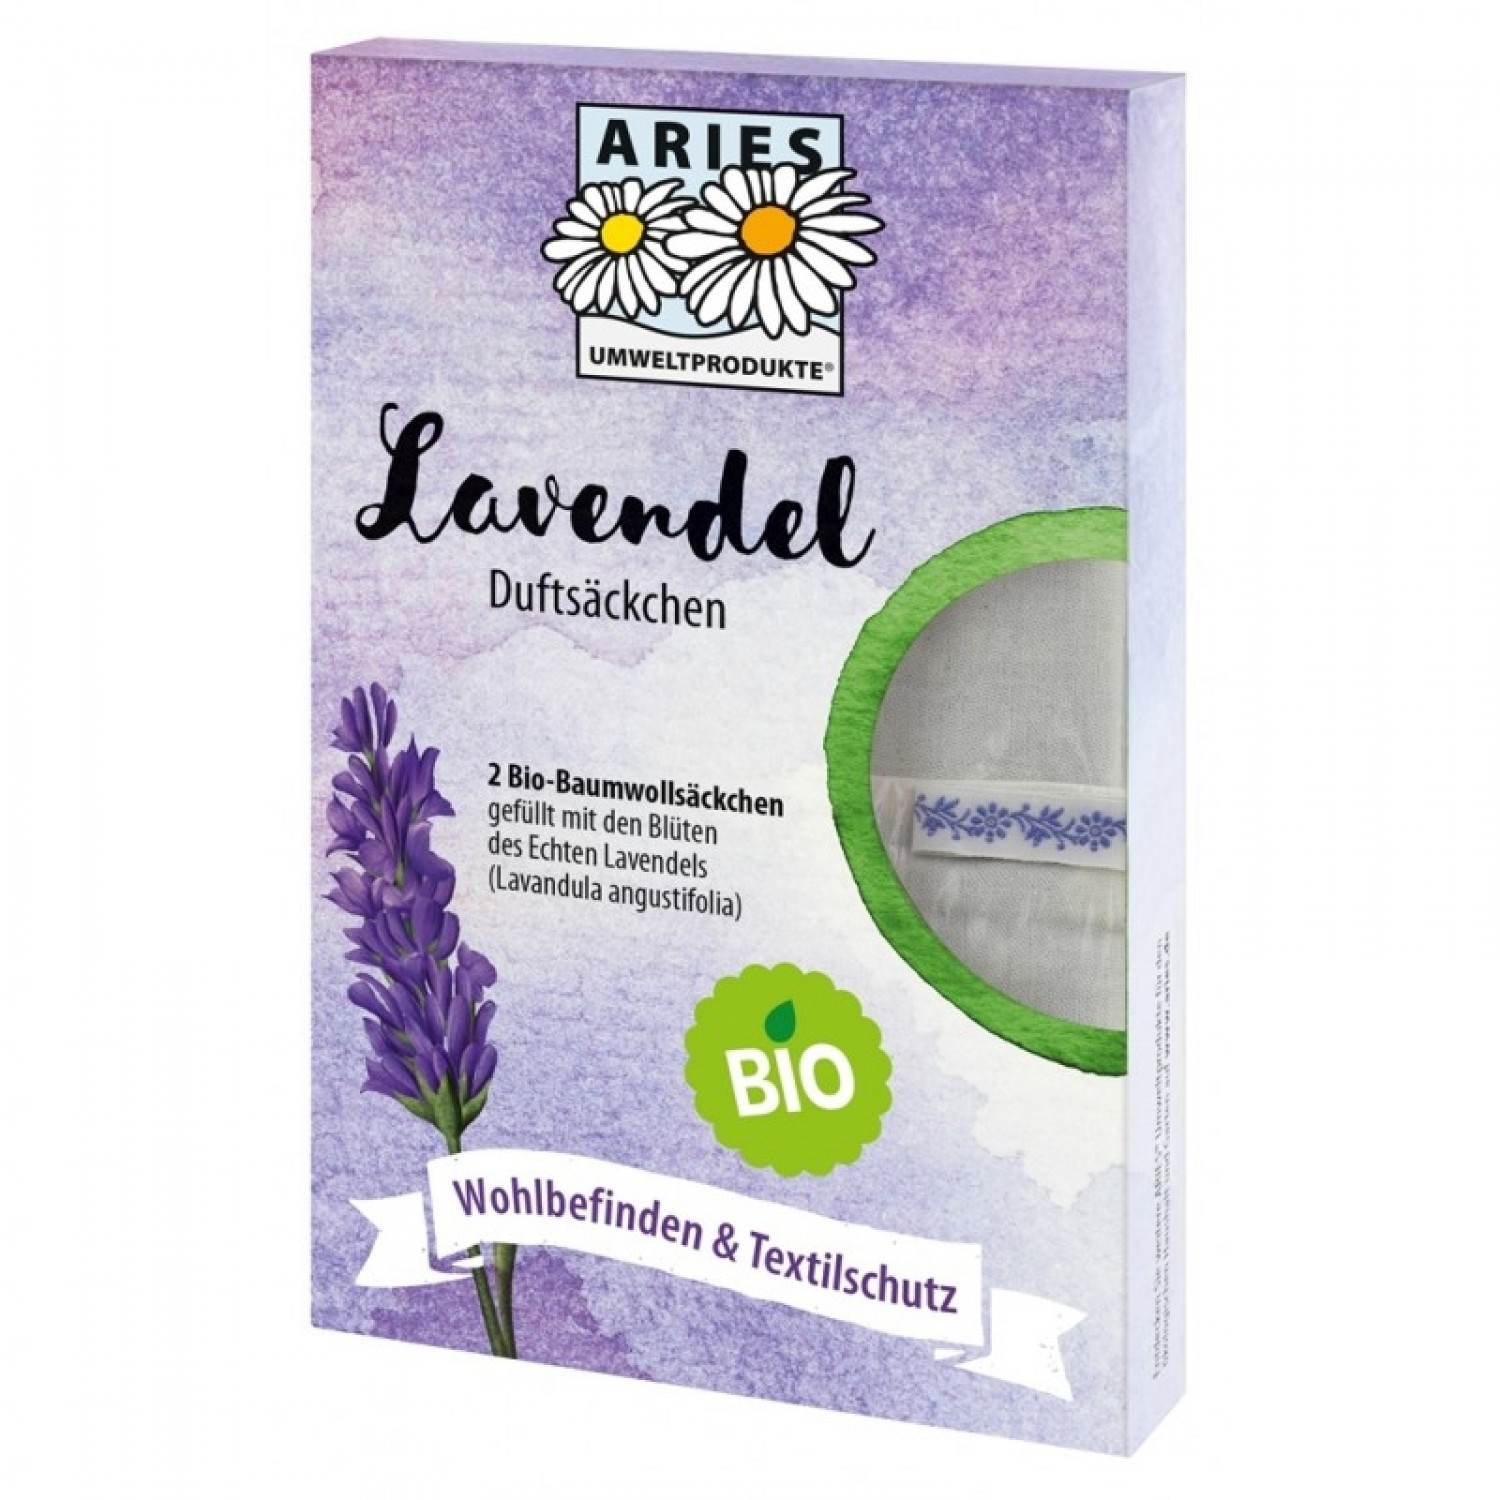 Aries Bio Lavendel Duftsäckchen - Textilschutz & Wohlbefinden